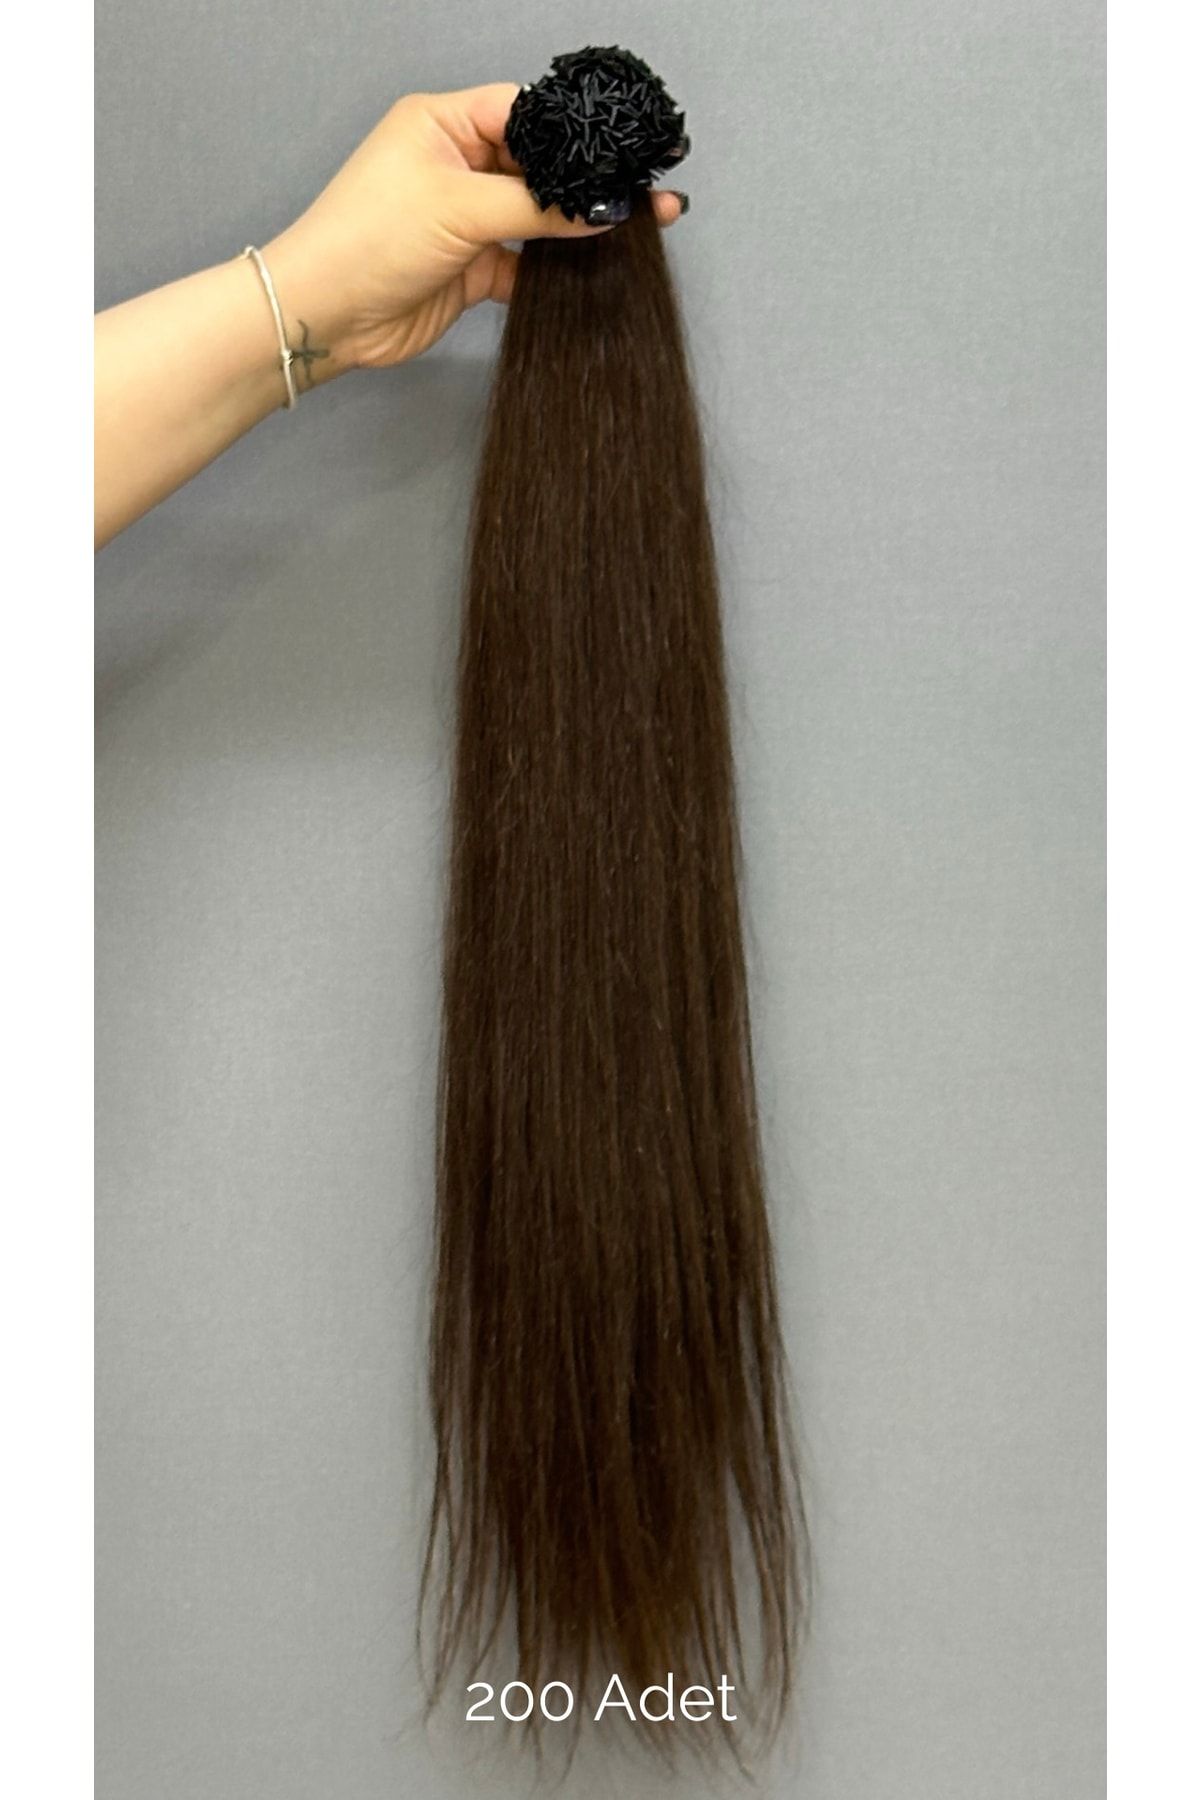 HalitCan HairKing 65cm Boyunda, 200 Adet, 160gr Koyu Kahve (4.0) Mikro Kaynak Yüzde Yüz Gerçek Insan Saçları